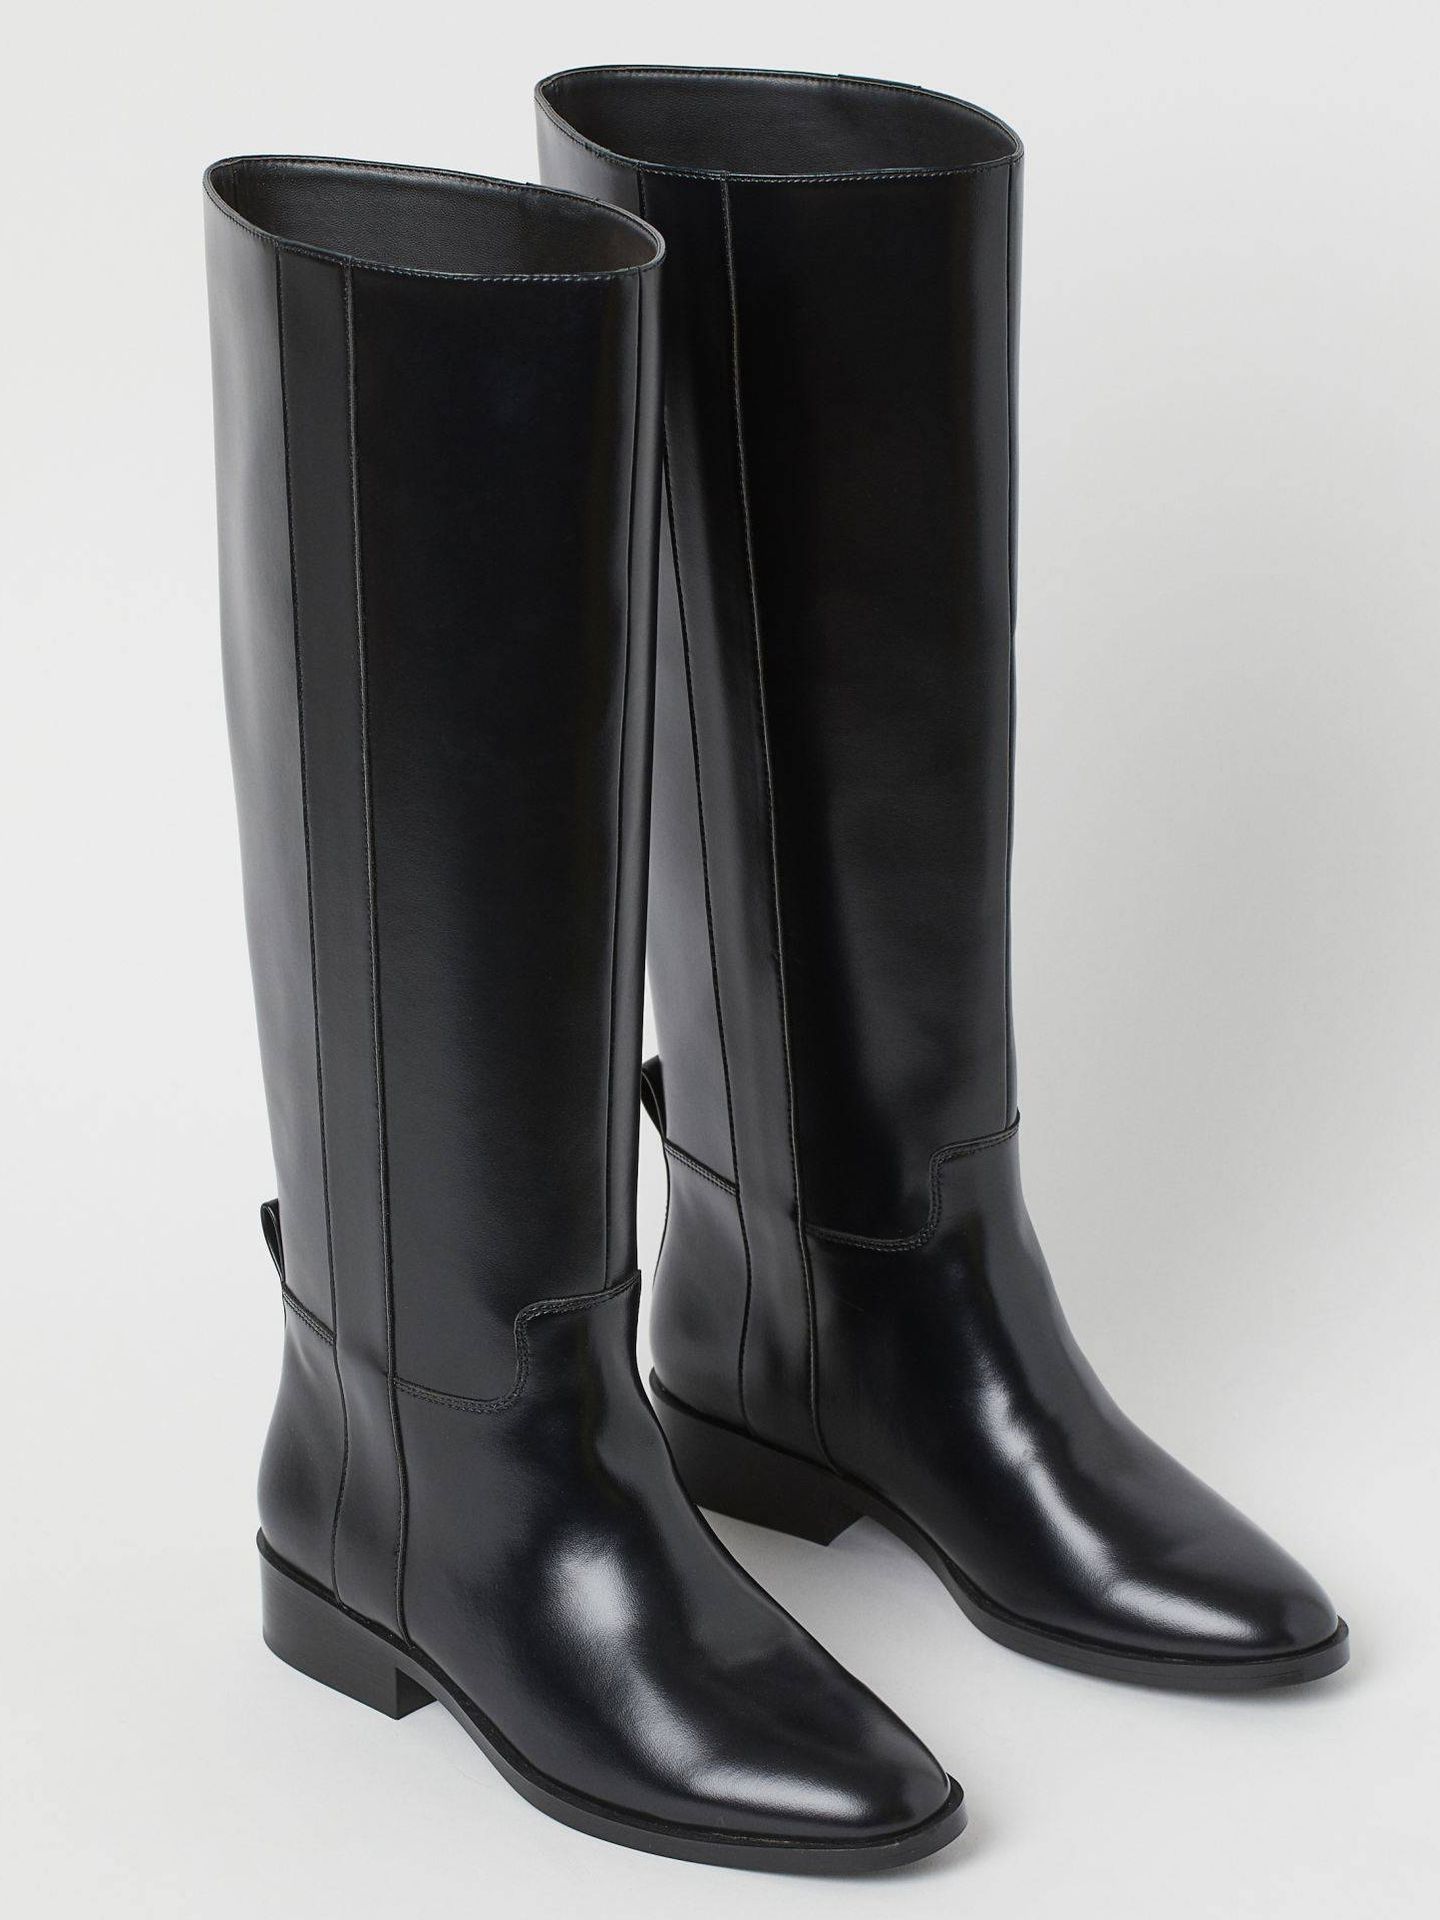 mudo con las manos en la masa realeza H&M tiene las botas negras sin tacón perfectas para cualquier fondo de  armario